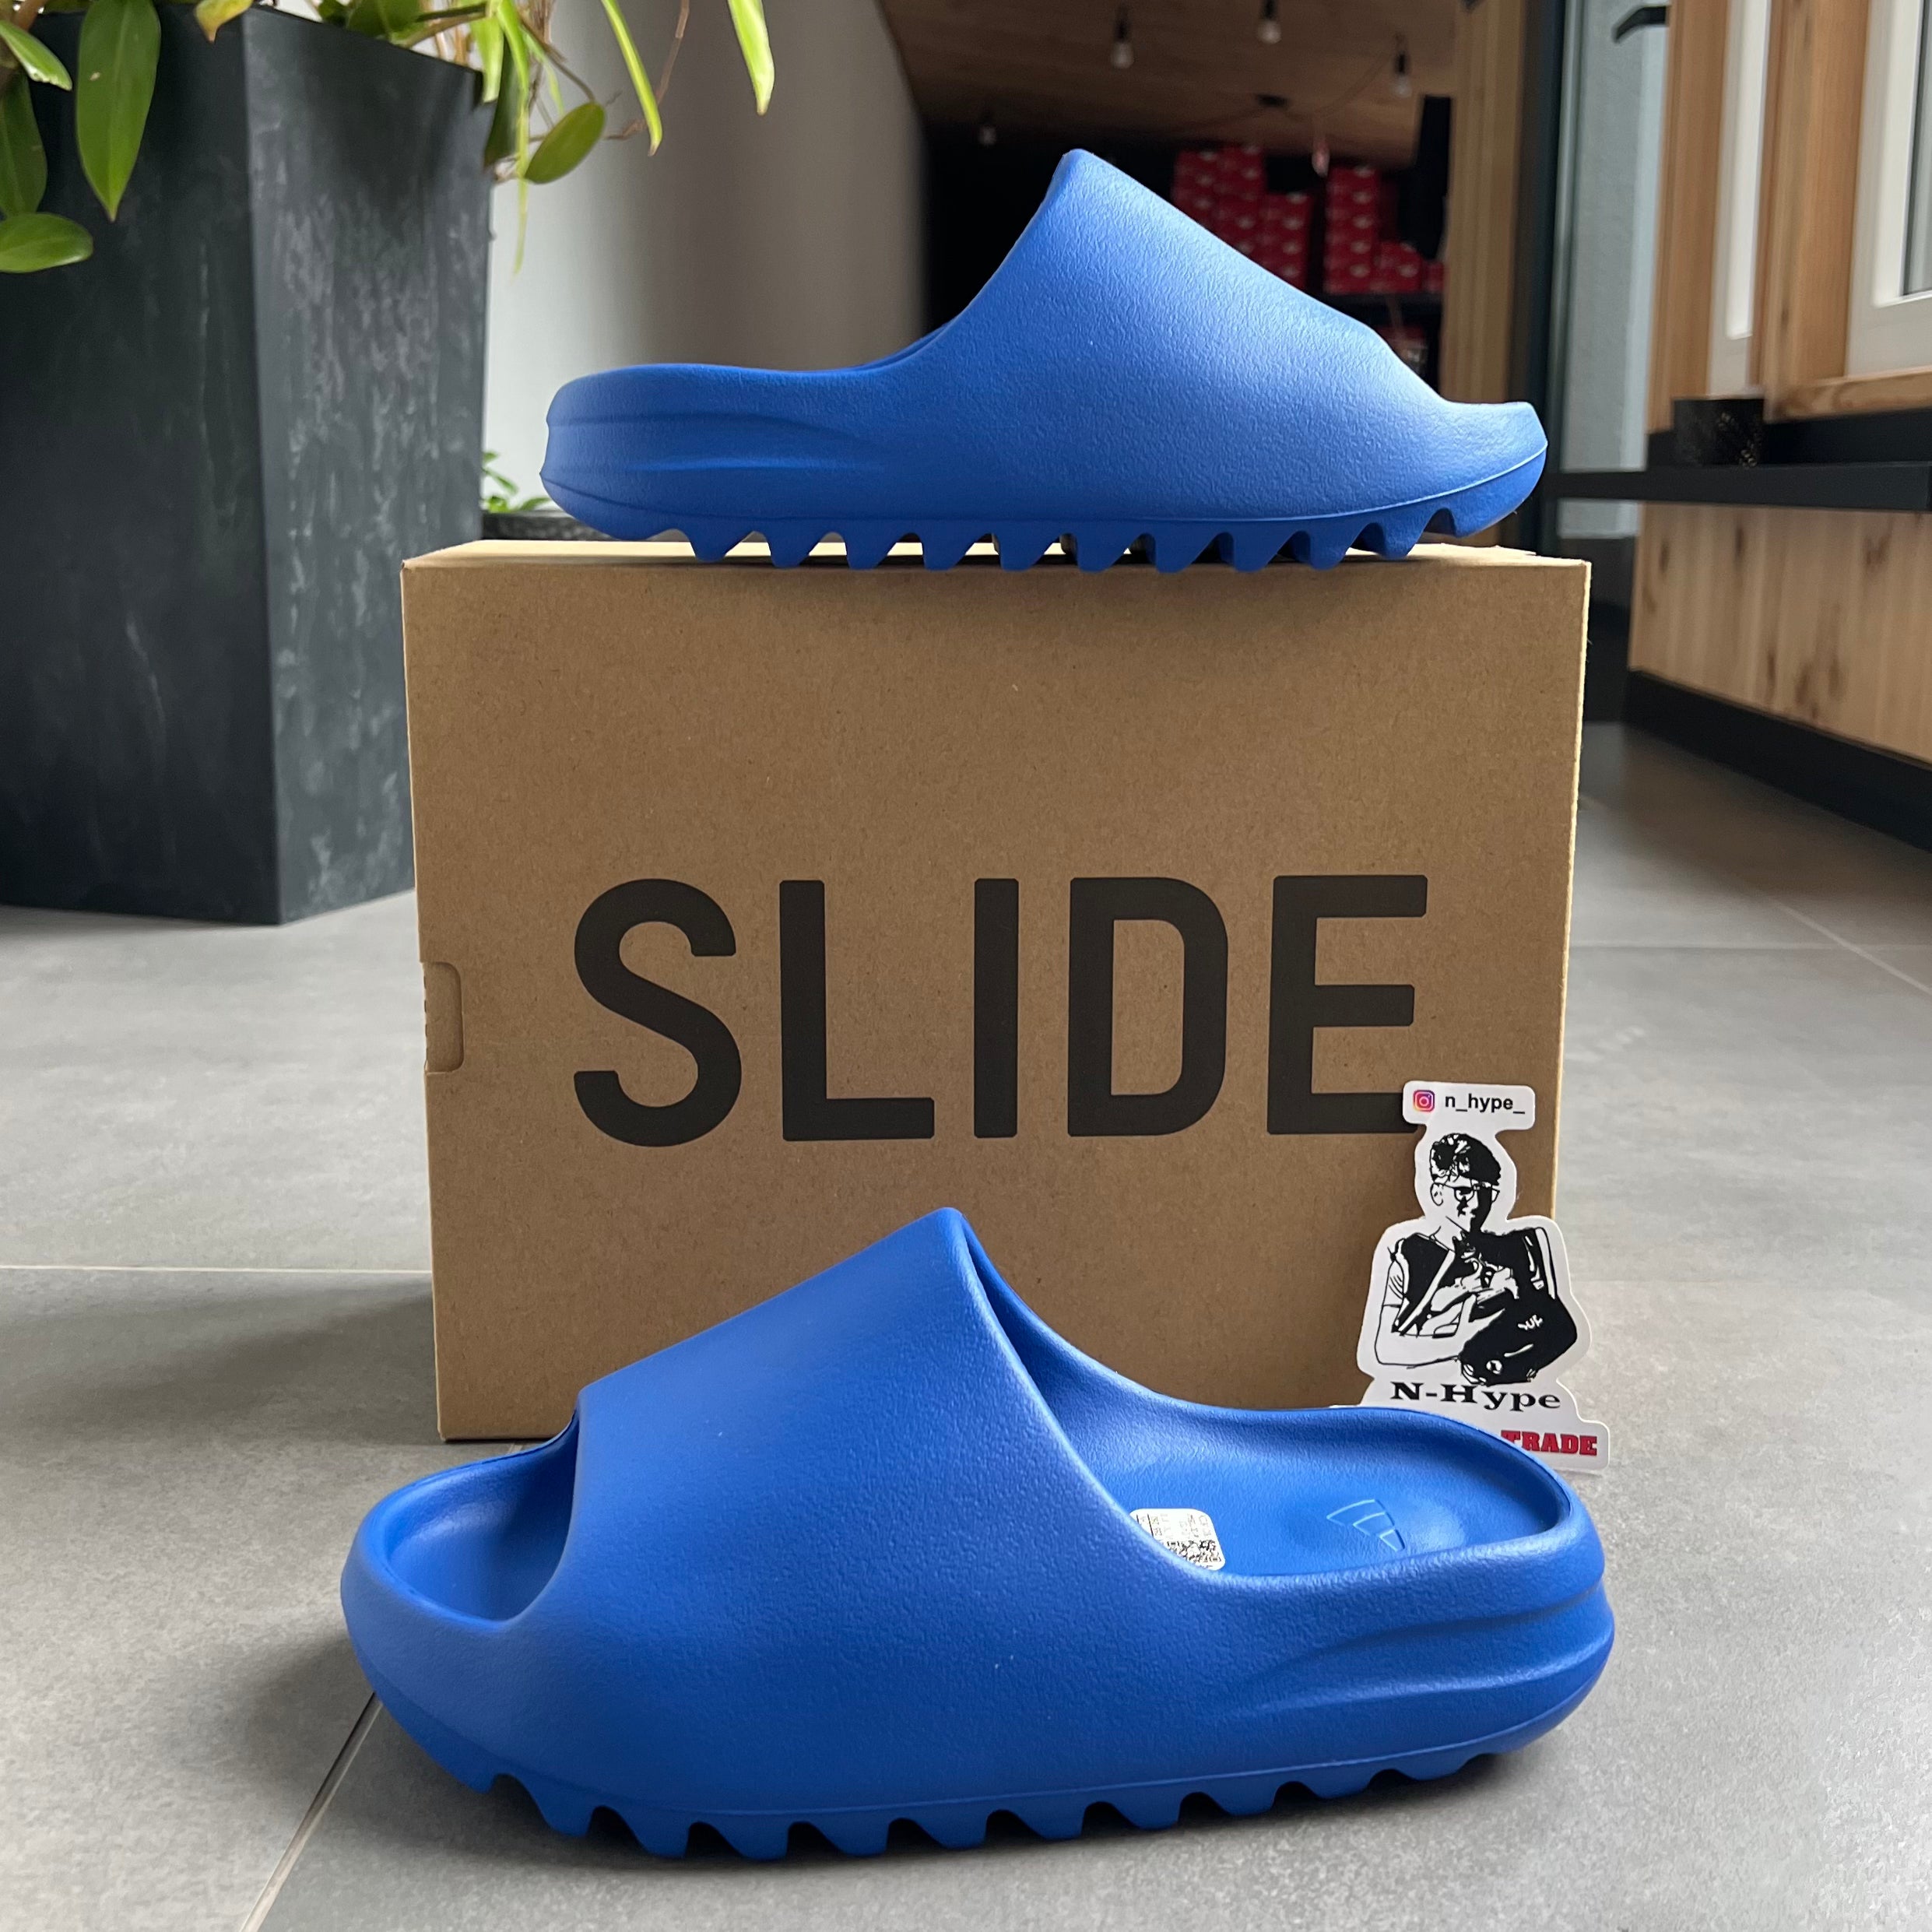 Adidas Yeezy Slide Azure Showroom NHype Lodz Polska 3